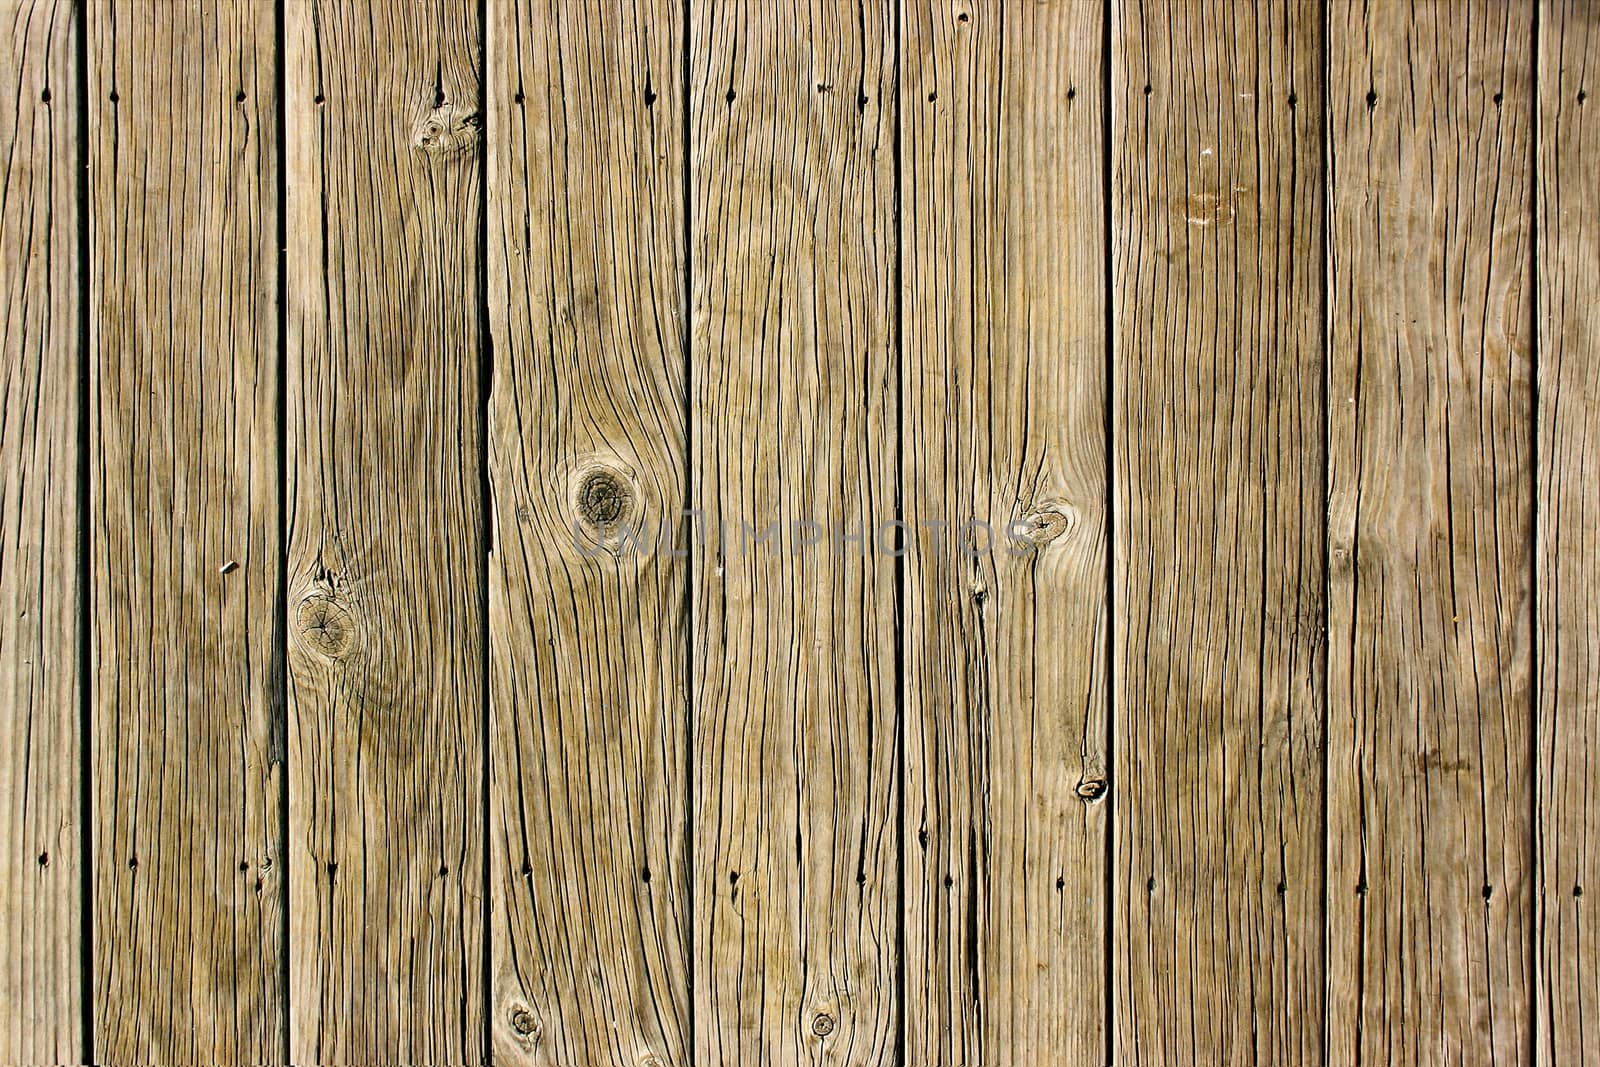 Wooden Boards by Binkski